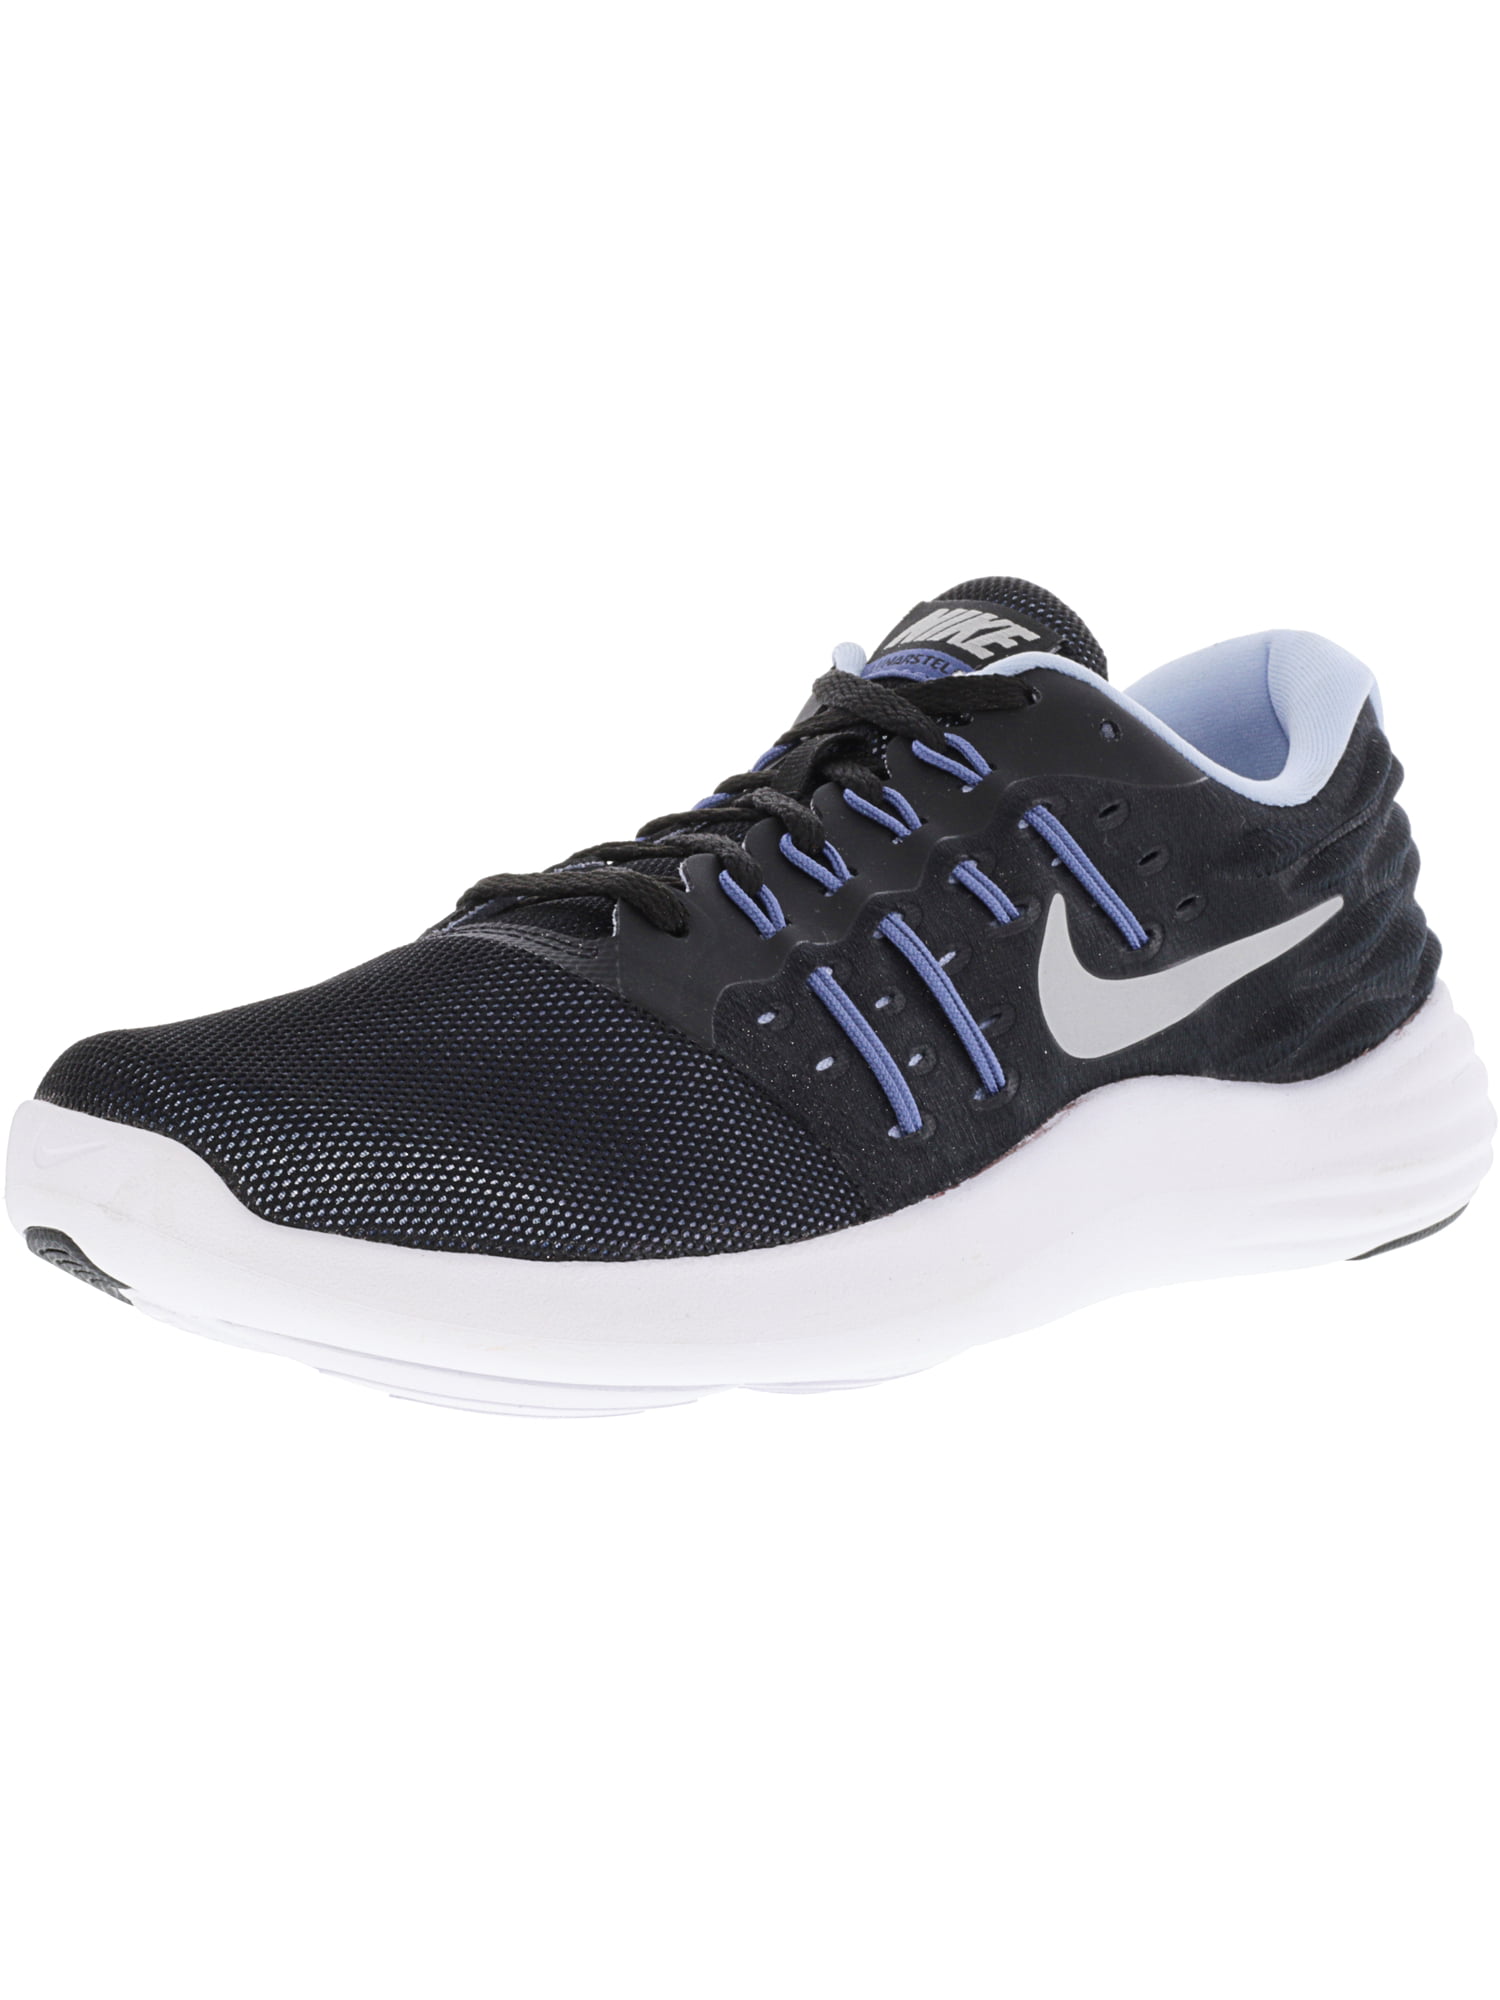 Nike Women's Lunarstelos Black / Metallic Blue Ankle-High Walking Shoe - 9M -